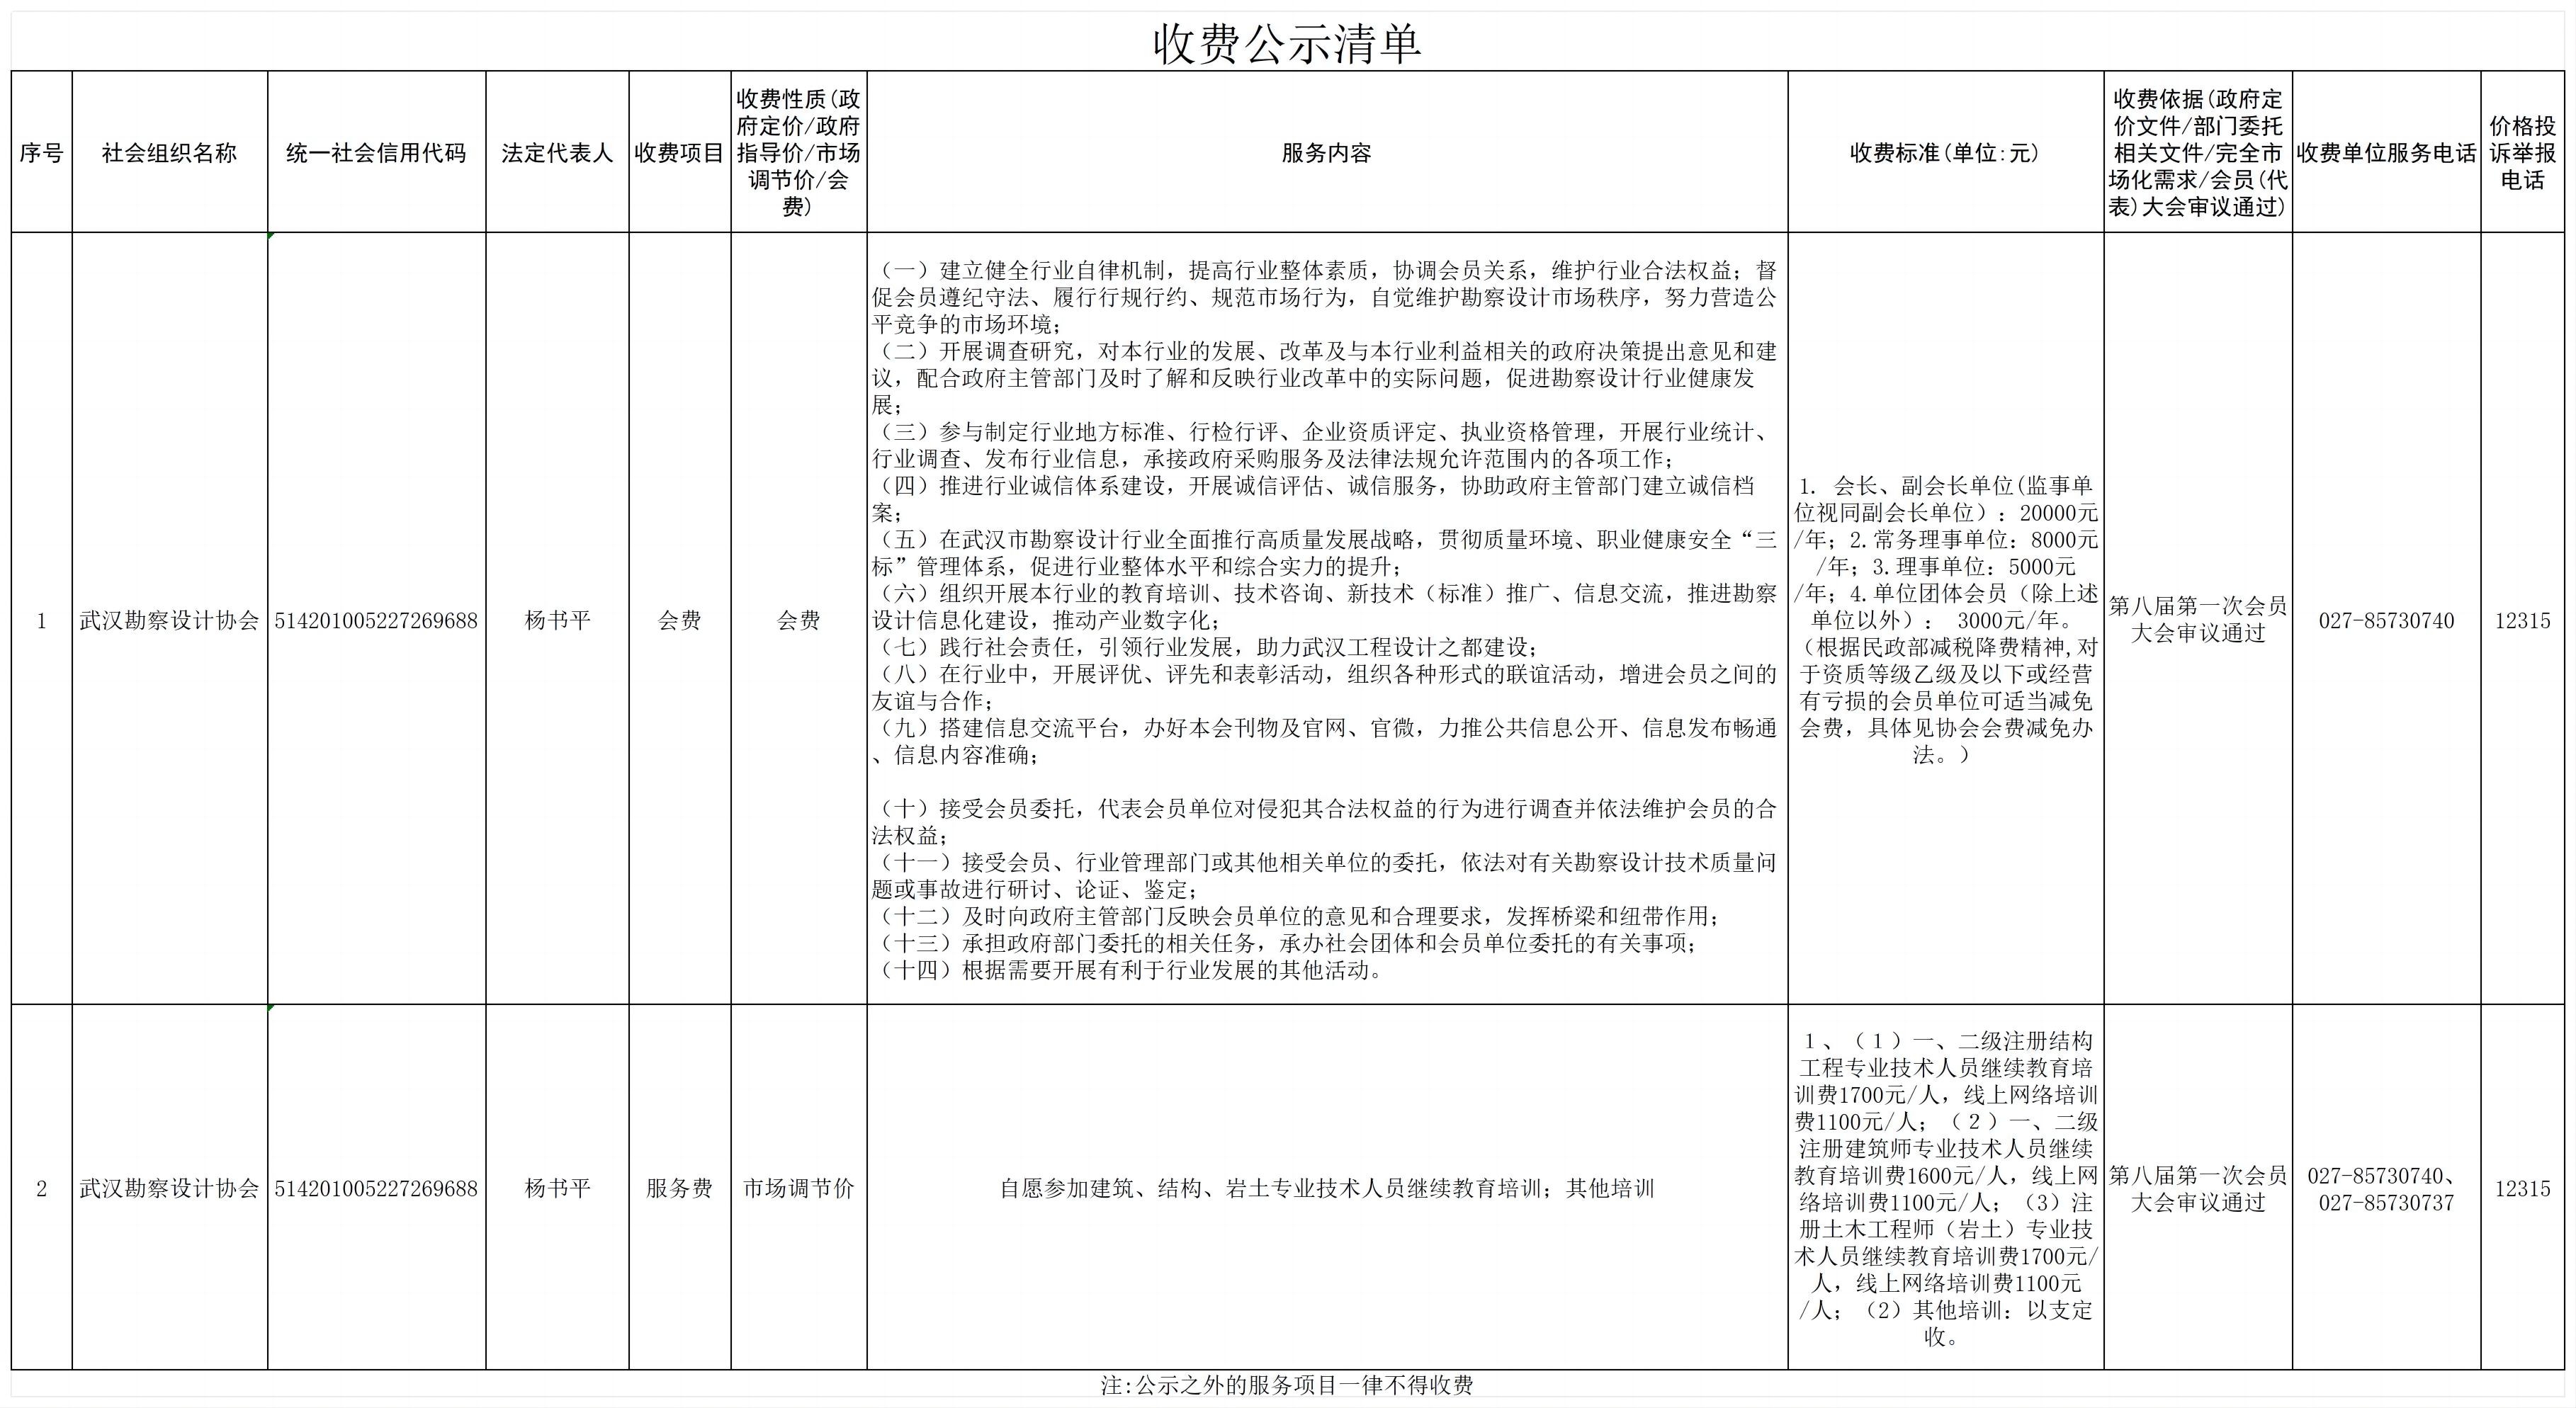 武汉勘察设计协会收费公示清单